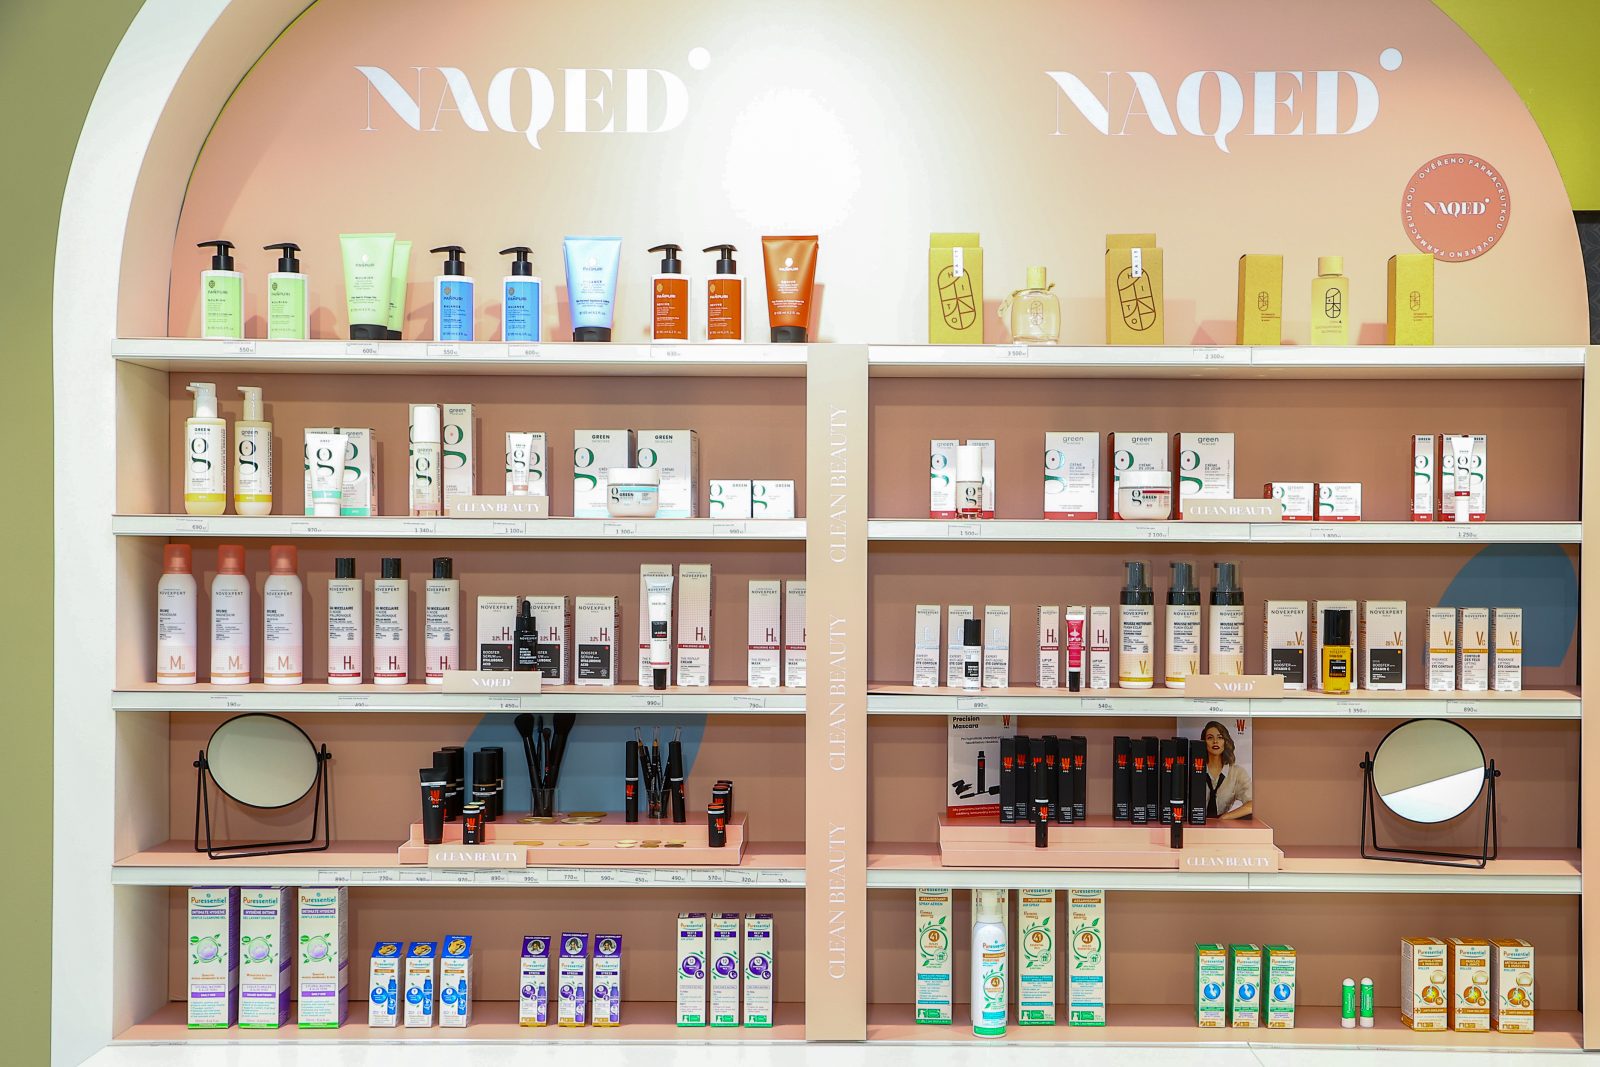 NAQED naleznete v 8 vybraných kamenných prodejnách sítě parfumerií FAnn.